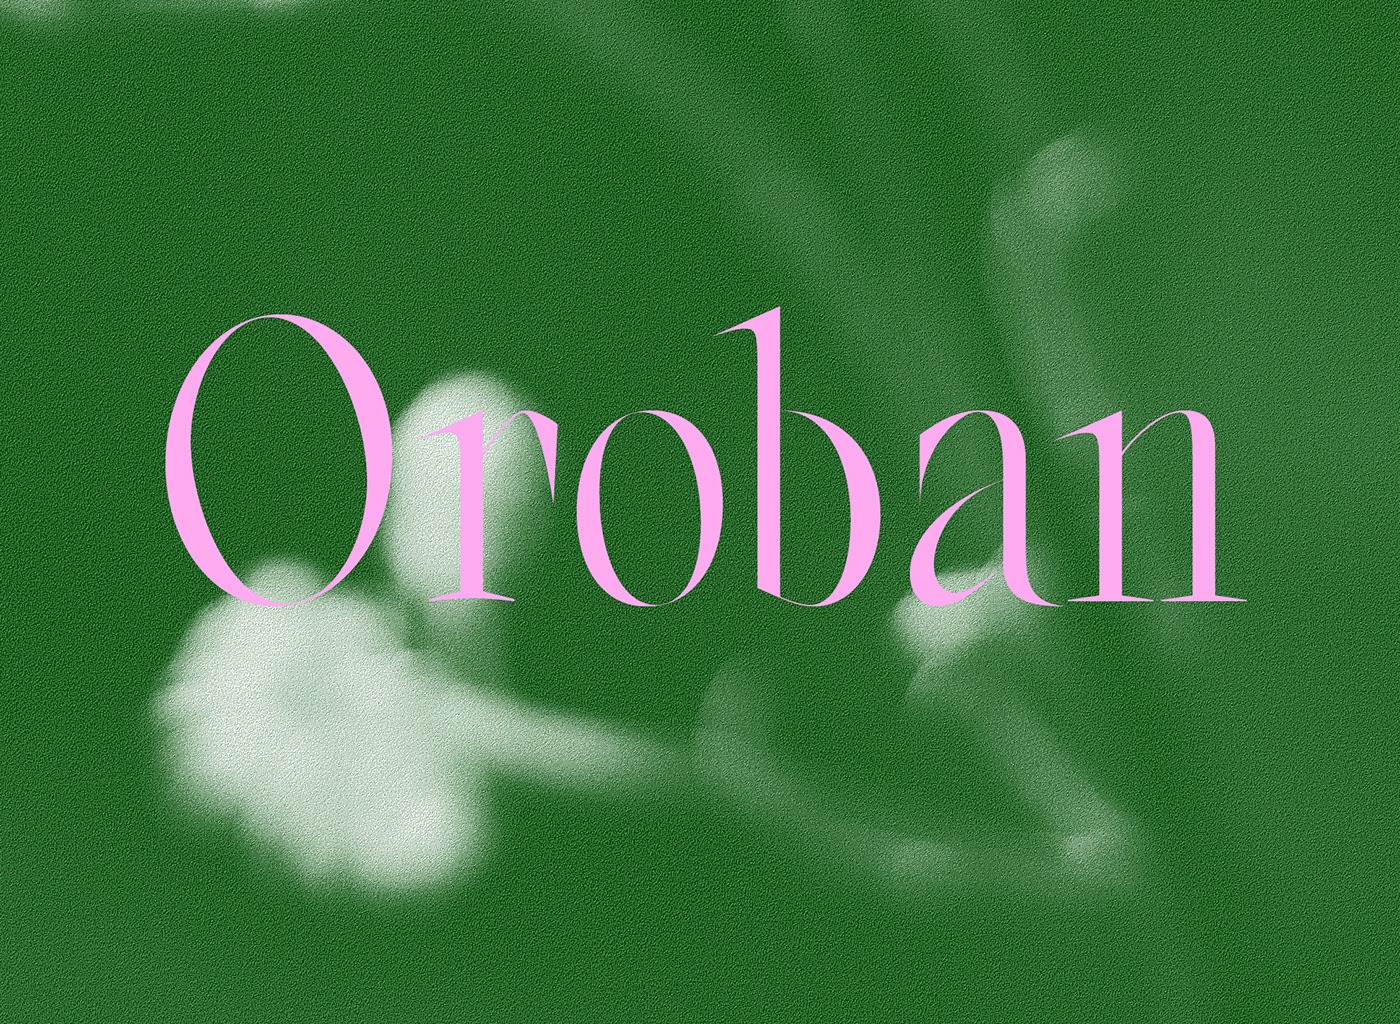 Oroban Serif Font